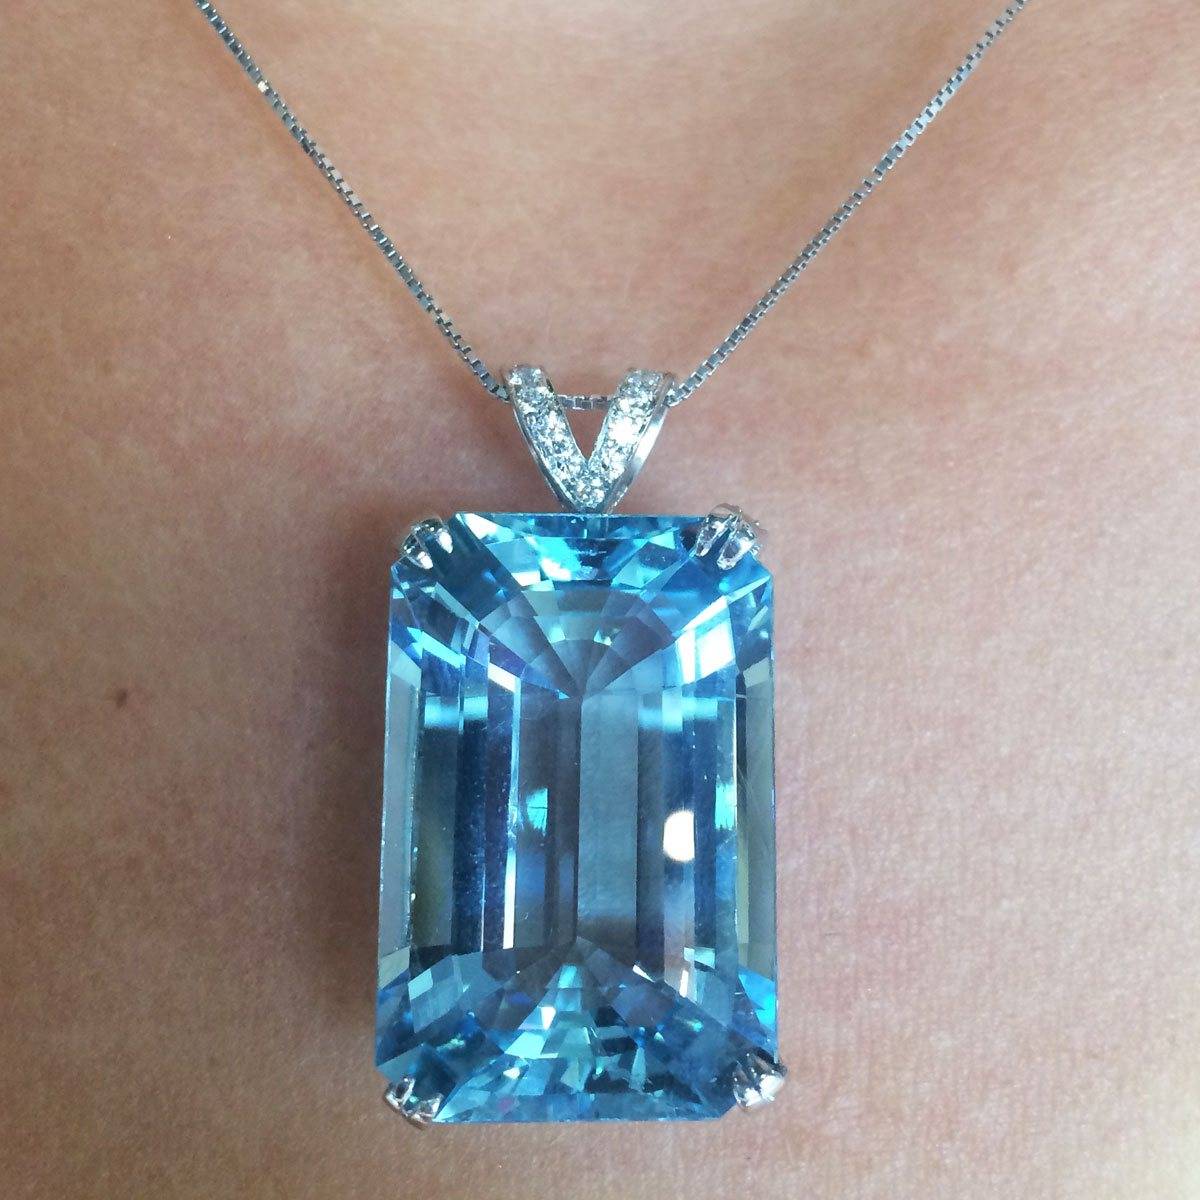 Huge 29 carat aquamarine pendant